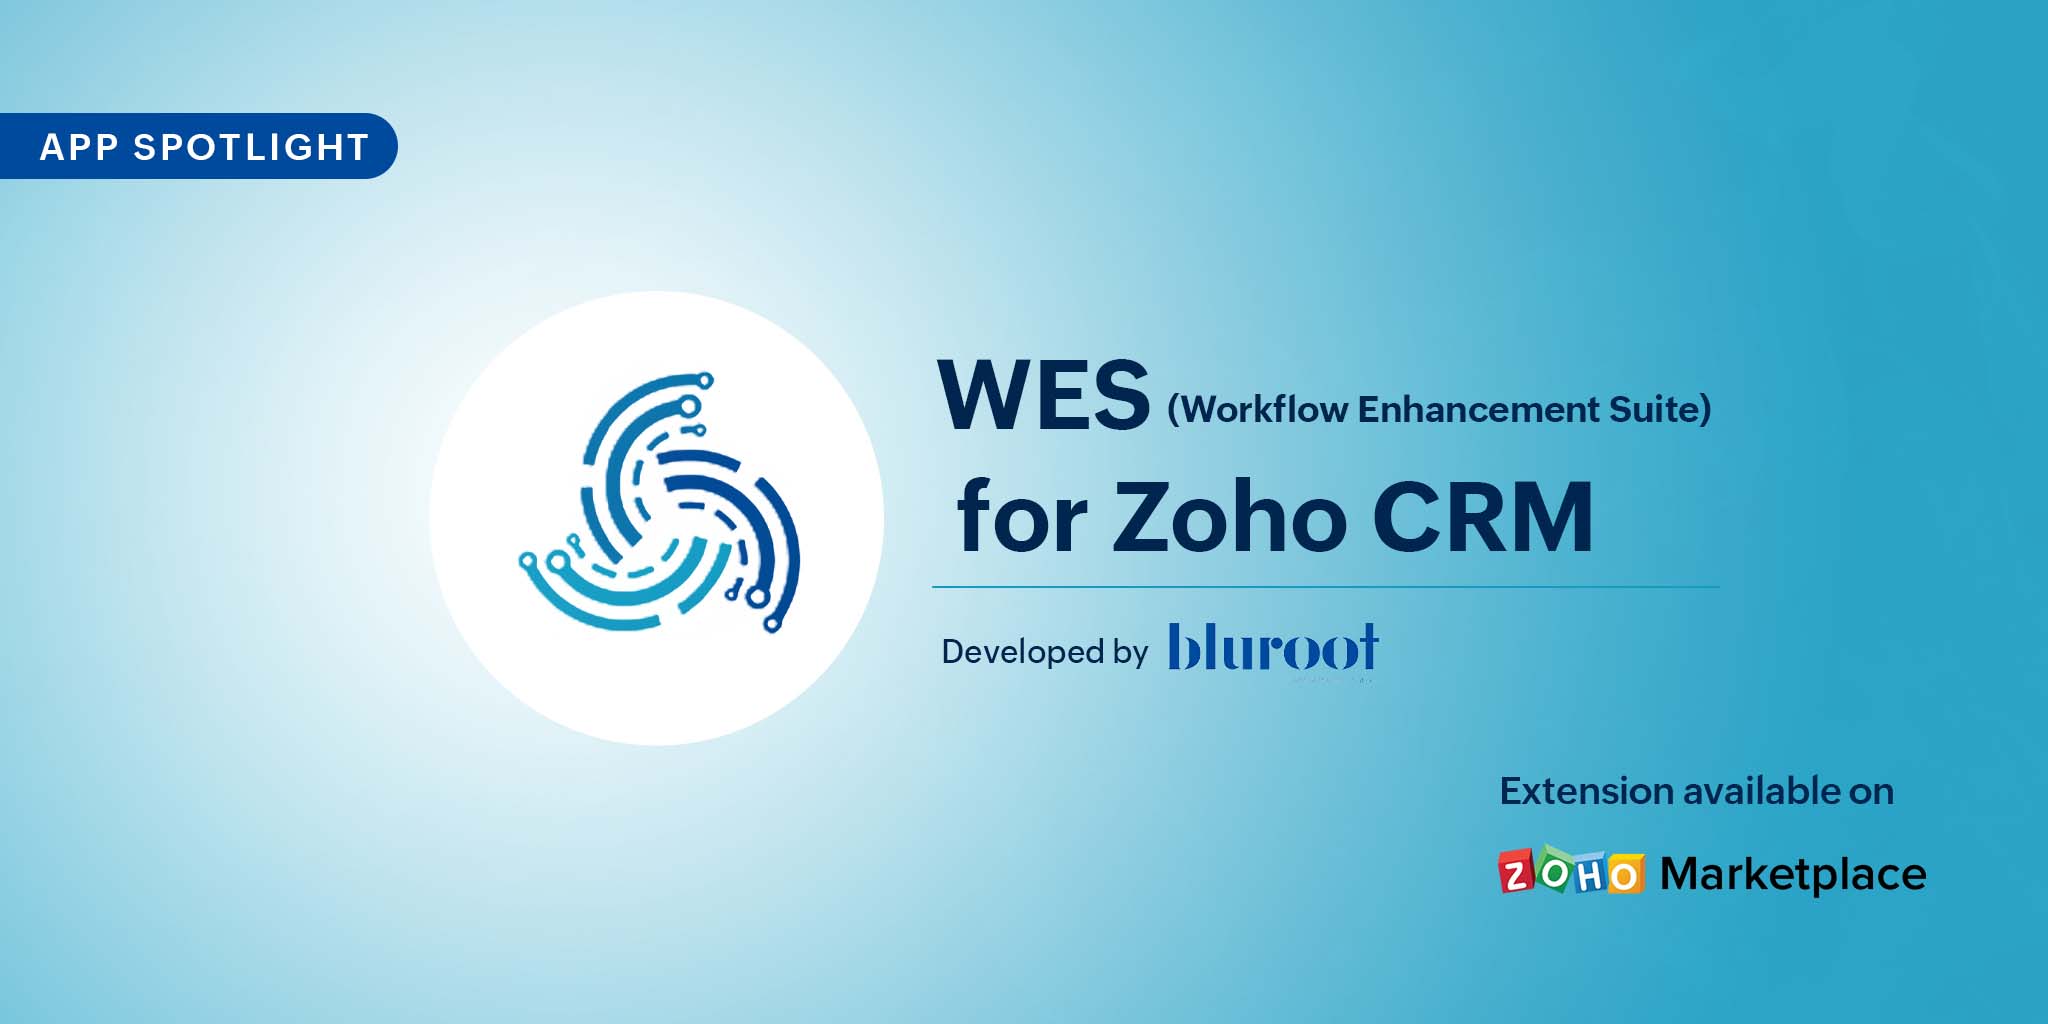 App Spotlight: WES for Zoho CRM